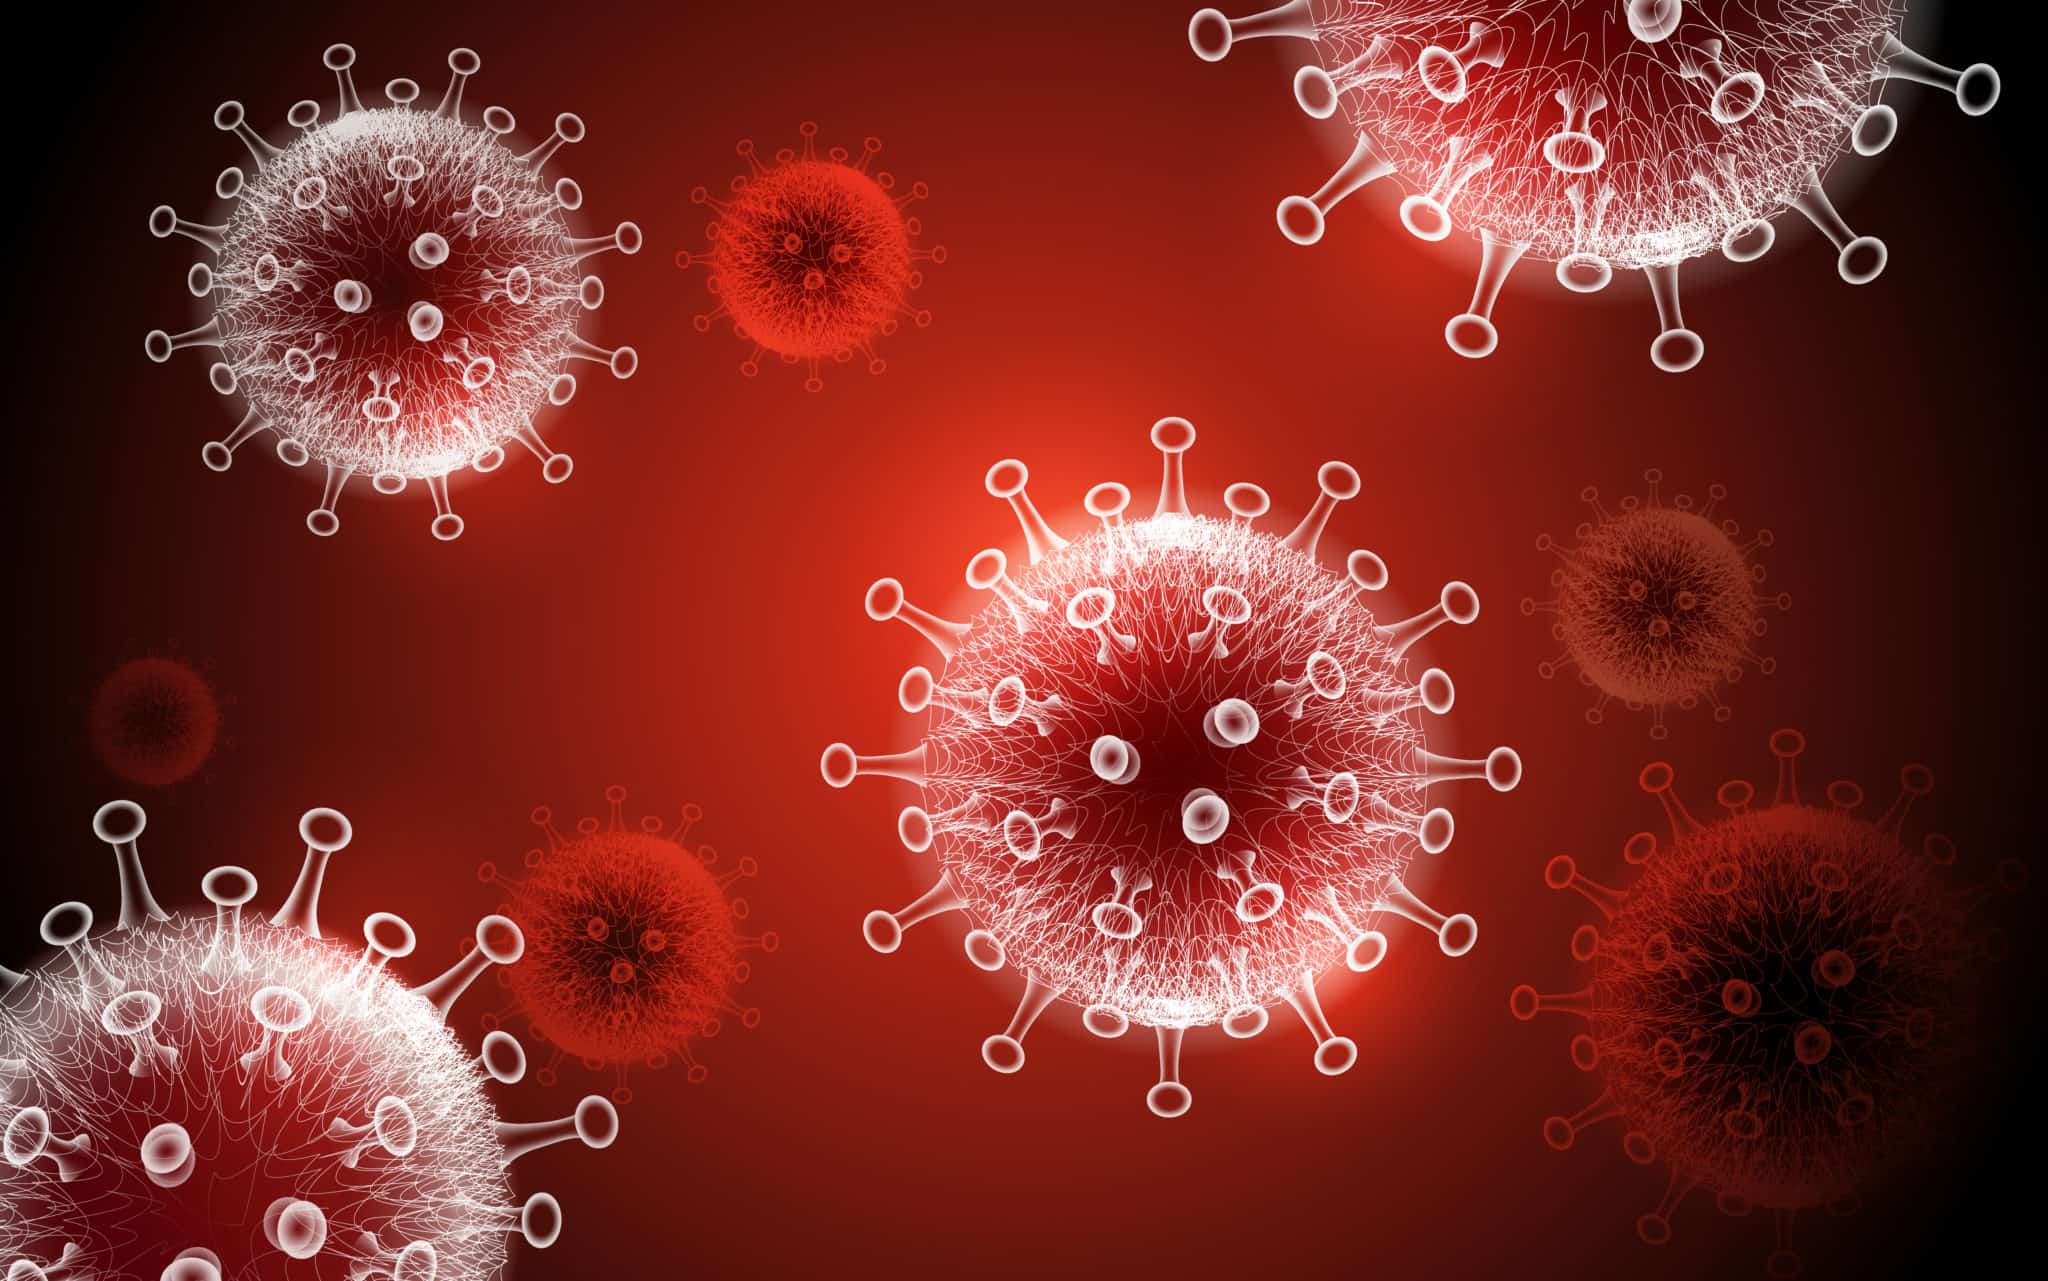 Các biến chủng virus SARS-CoV-2 ngày càng dễ lây lan hơn qua các giọt bắn nhỏ trong không khí. Ảnh minh họa: Siemplify